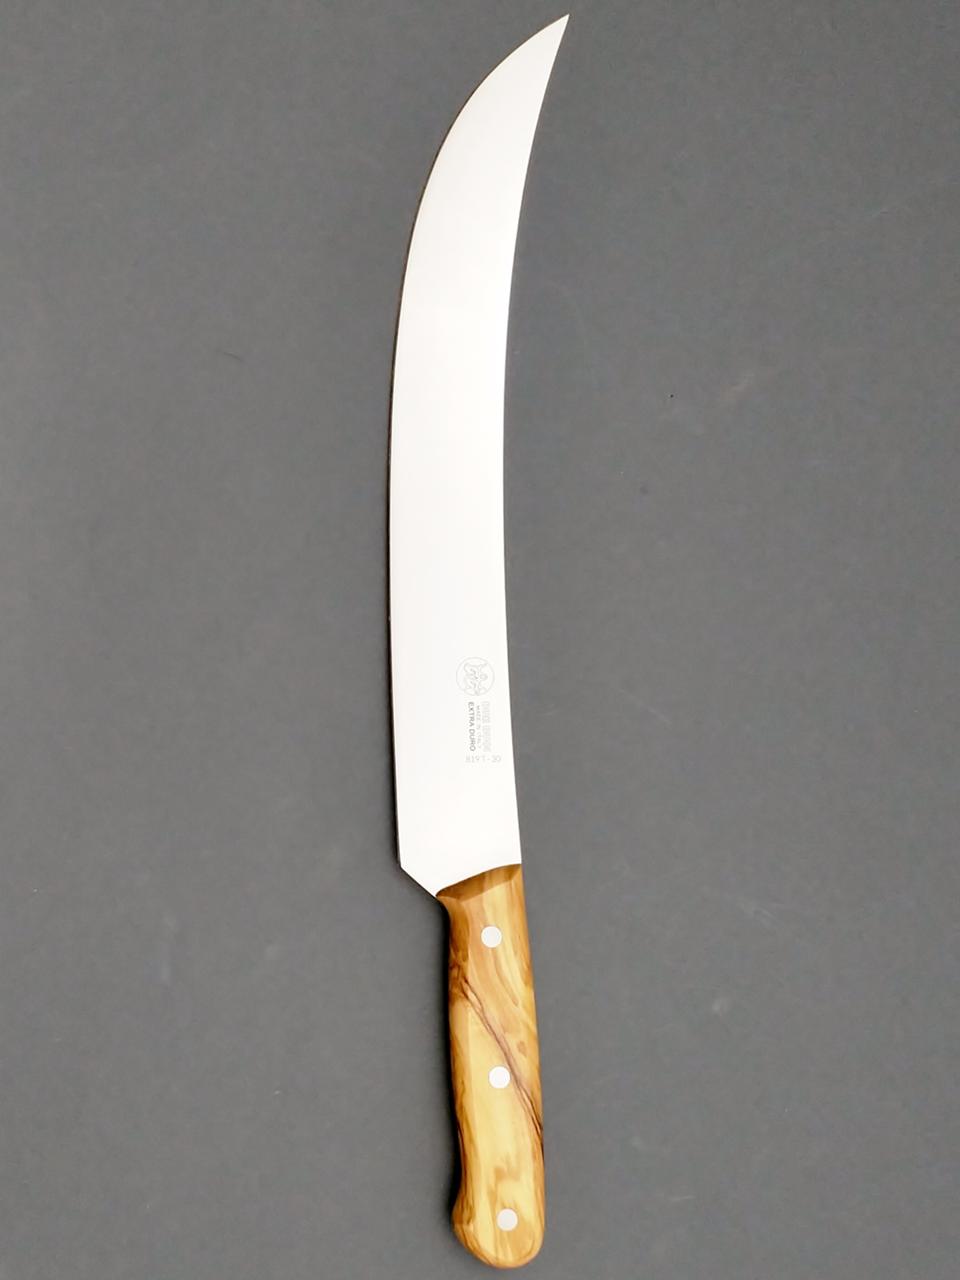 SABER KNIFE 12" BLADE - SOLID OLIVE WOOD FULL TANG HANDLE